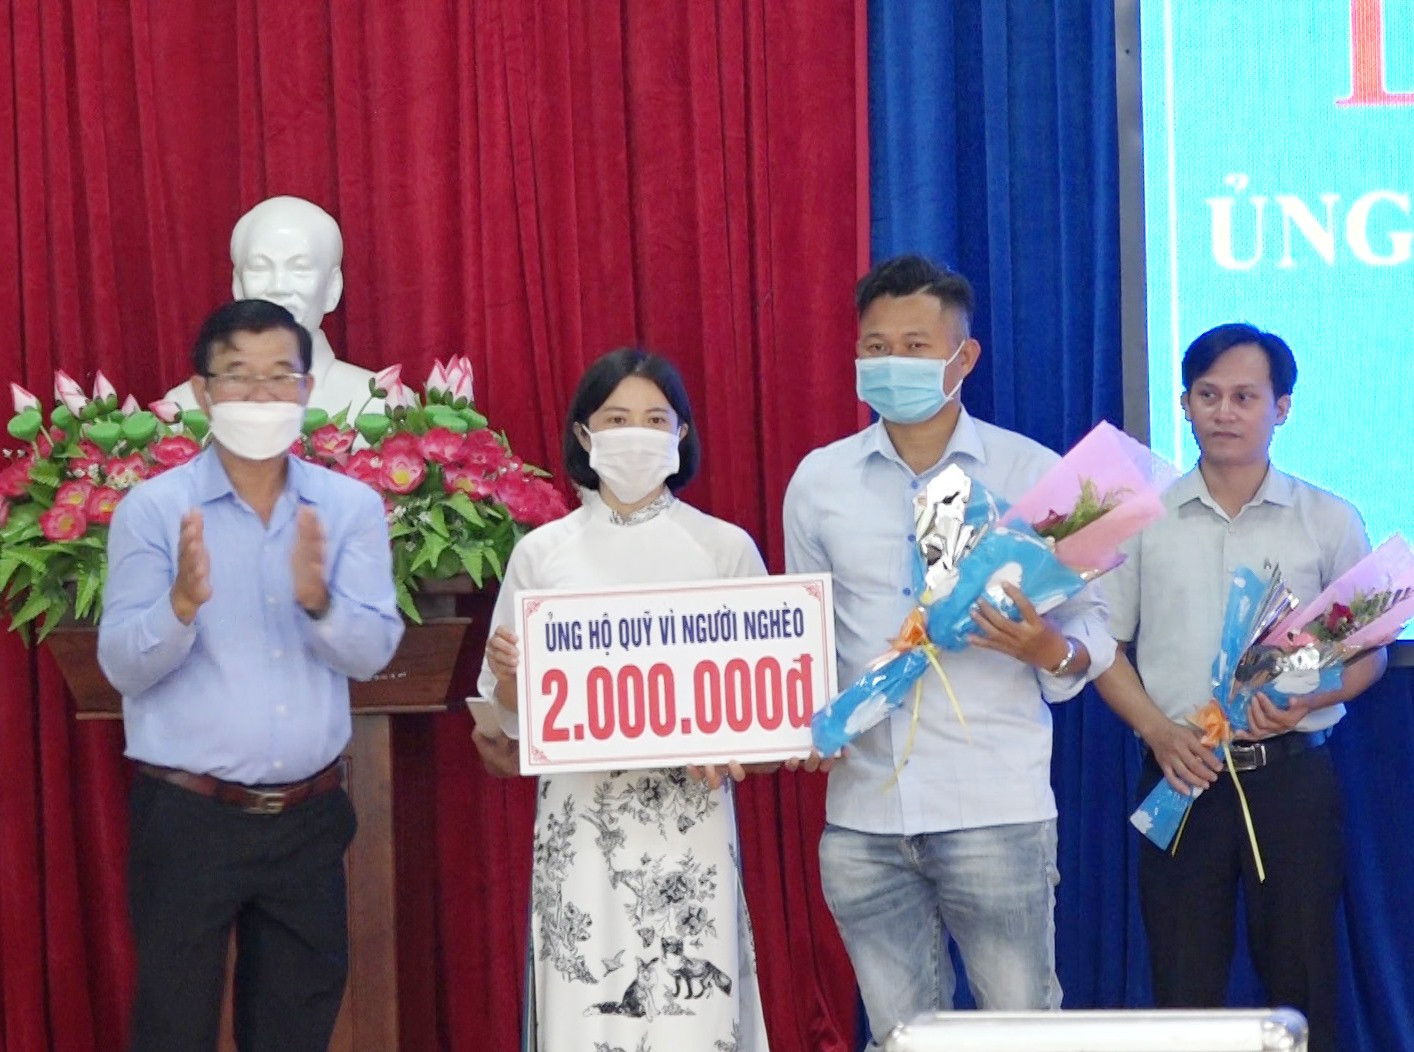 Cuộc vận động ủng hộ Quỹ Vì người nghèo được Mặt trận từ huyện đến cơ sở trên địa bàn huyện Thăng Bình thực hiện có hiệu quả. Ảnh: M.T